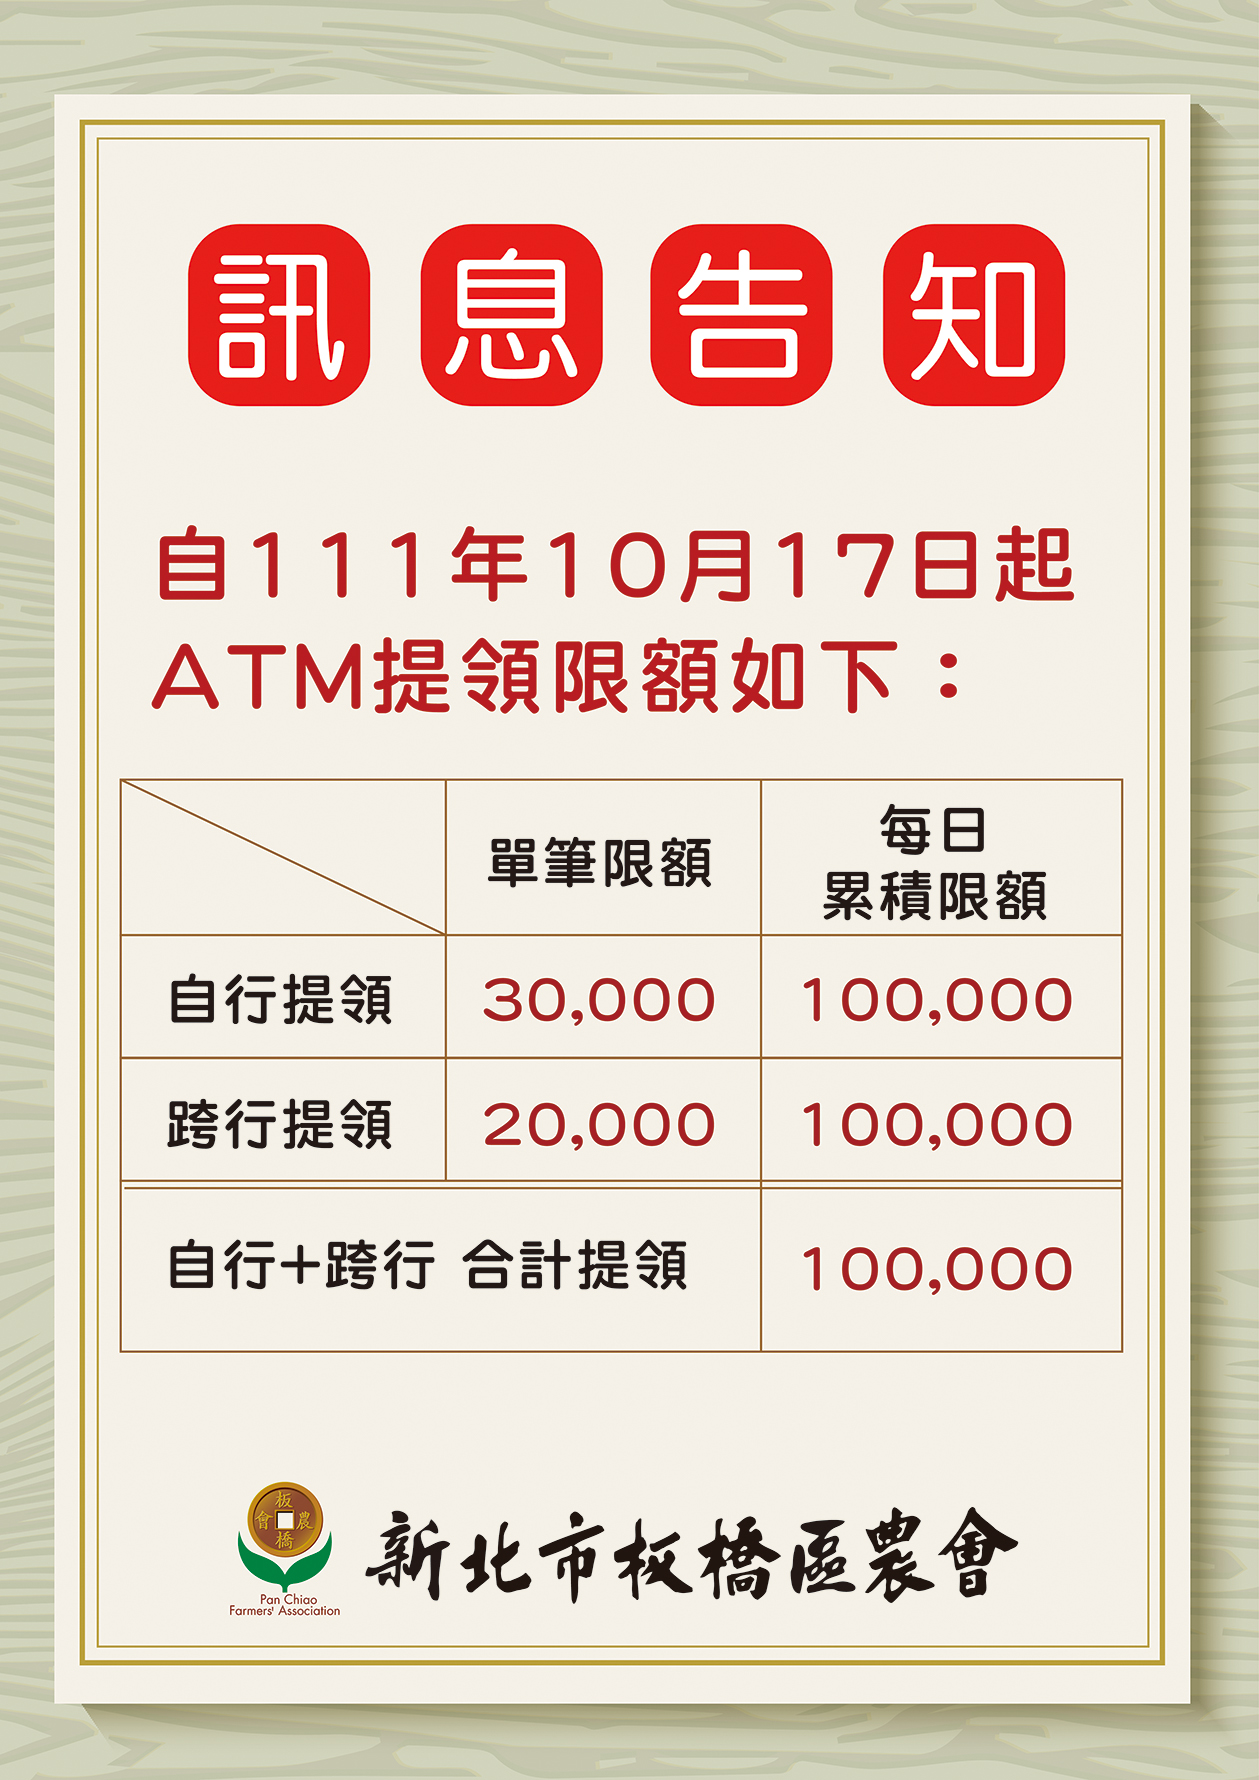 訊息告知 自111年10月17日起 ATM提領限額變更